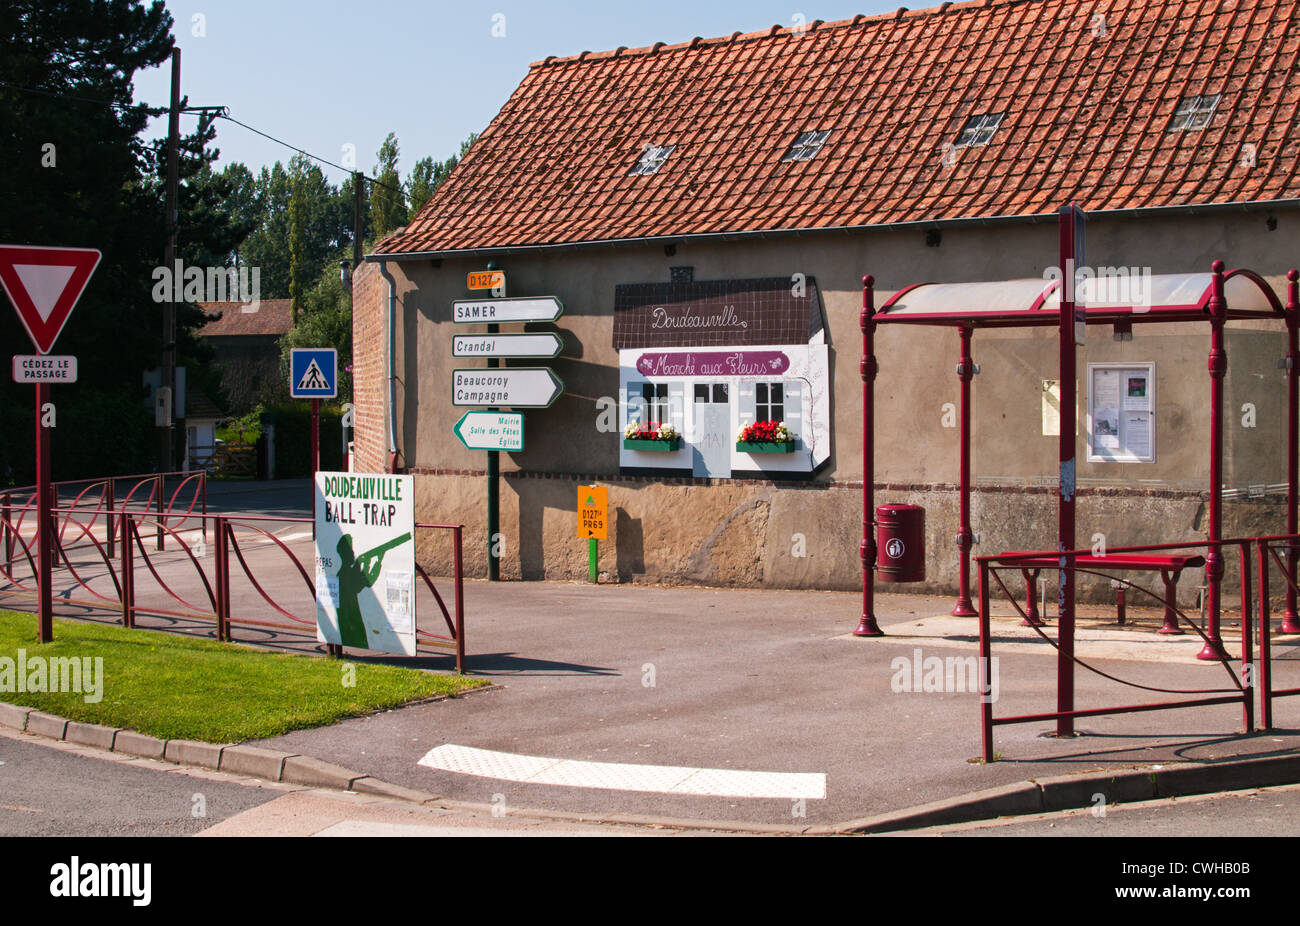 Doudeauville village, Pas-de-Calais, France. Stock Photo